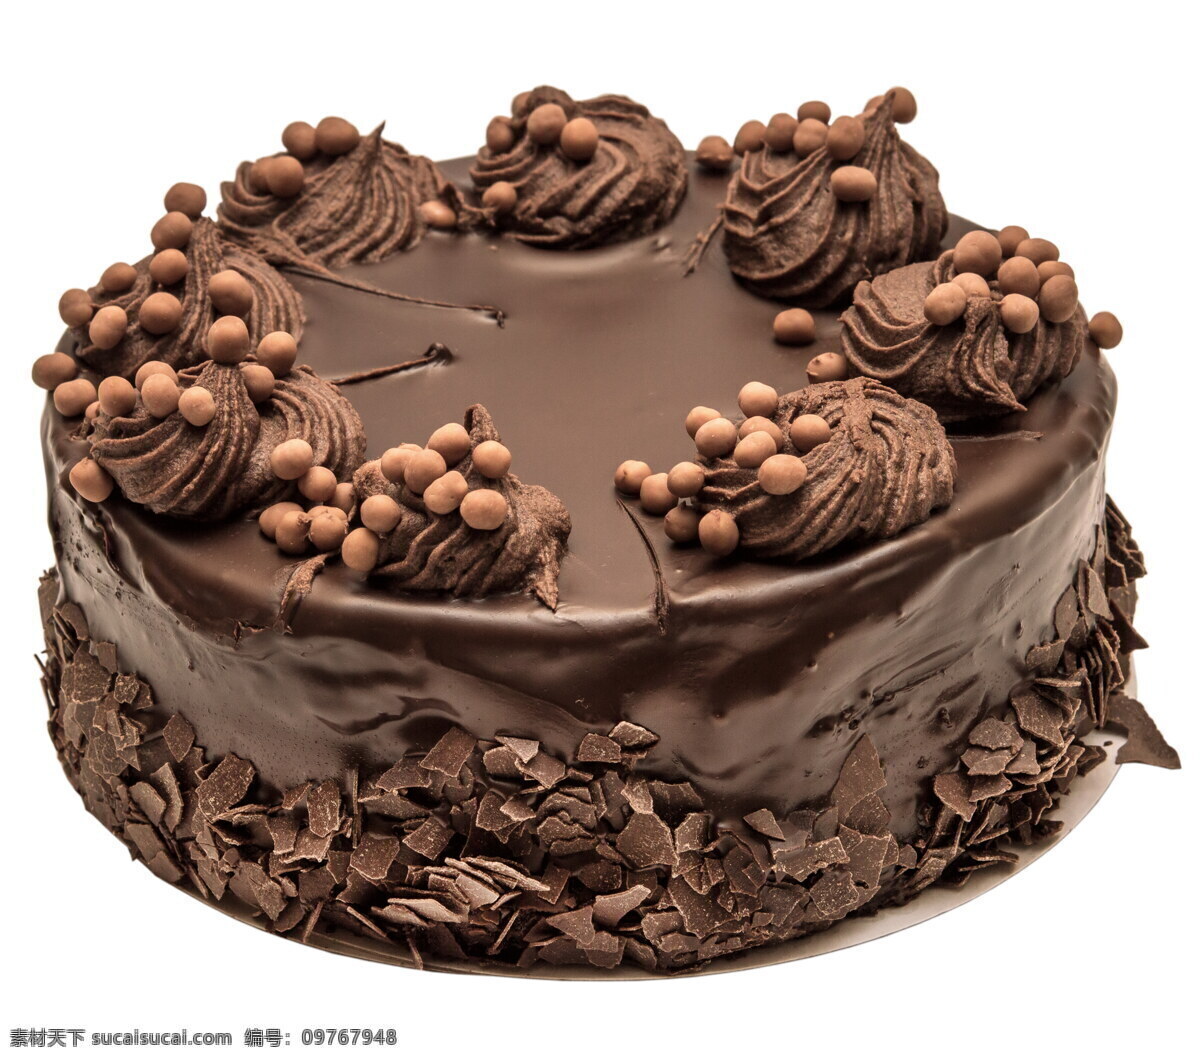 高清 美味 巧克力 蛋糕 生日蛋糕 生日 糕点